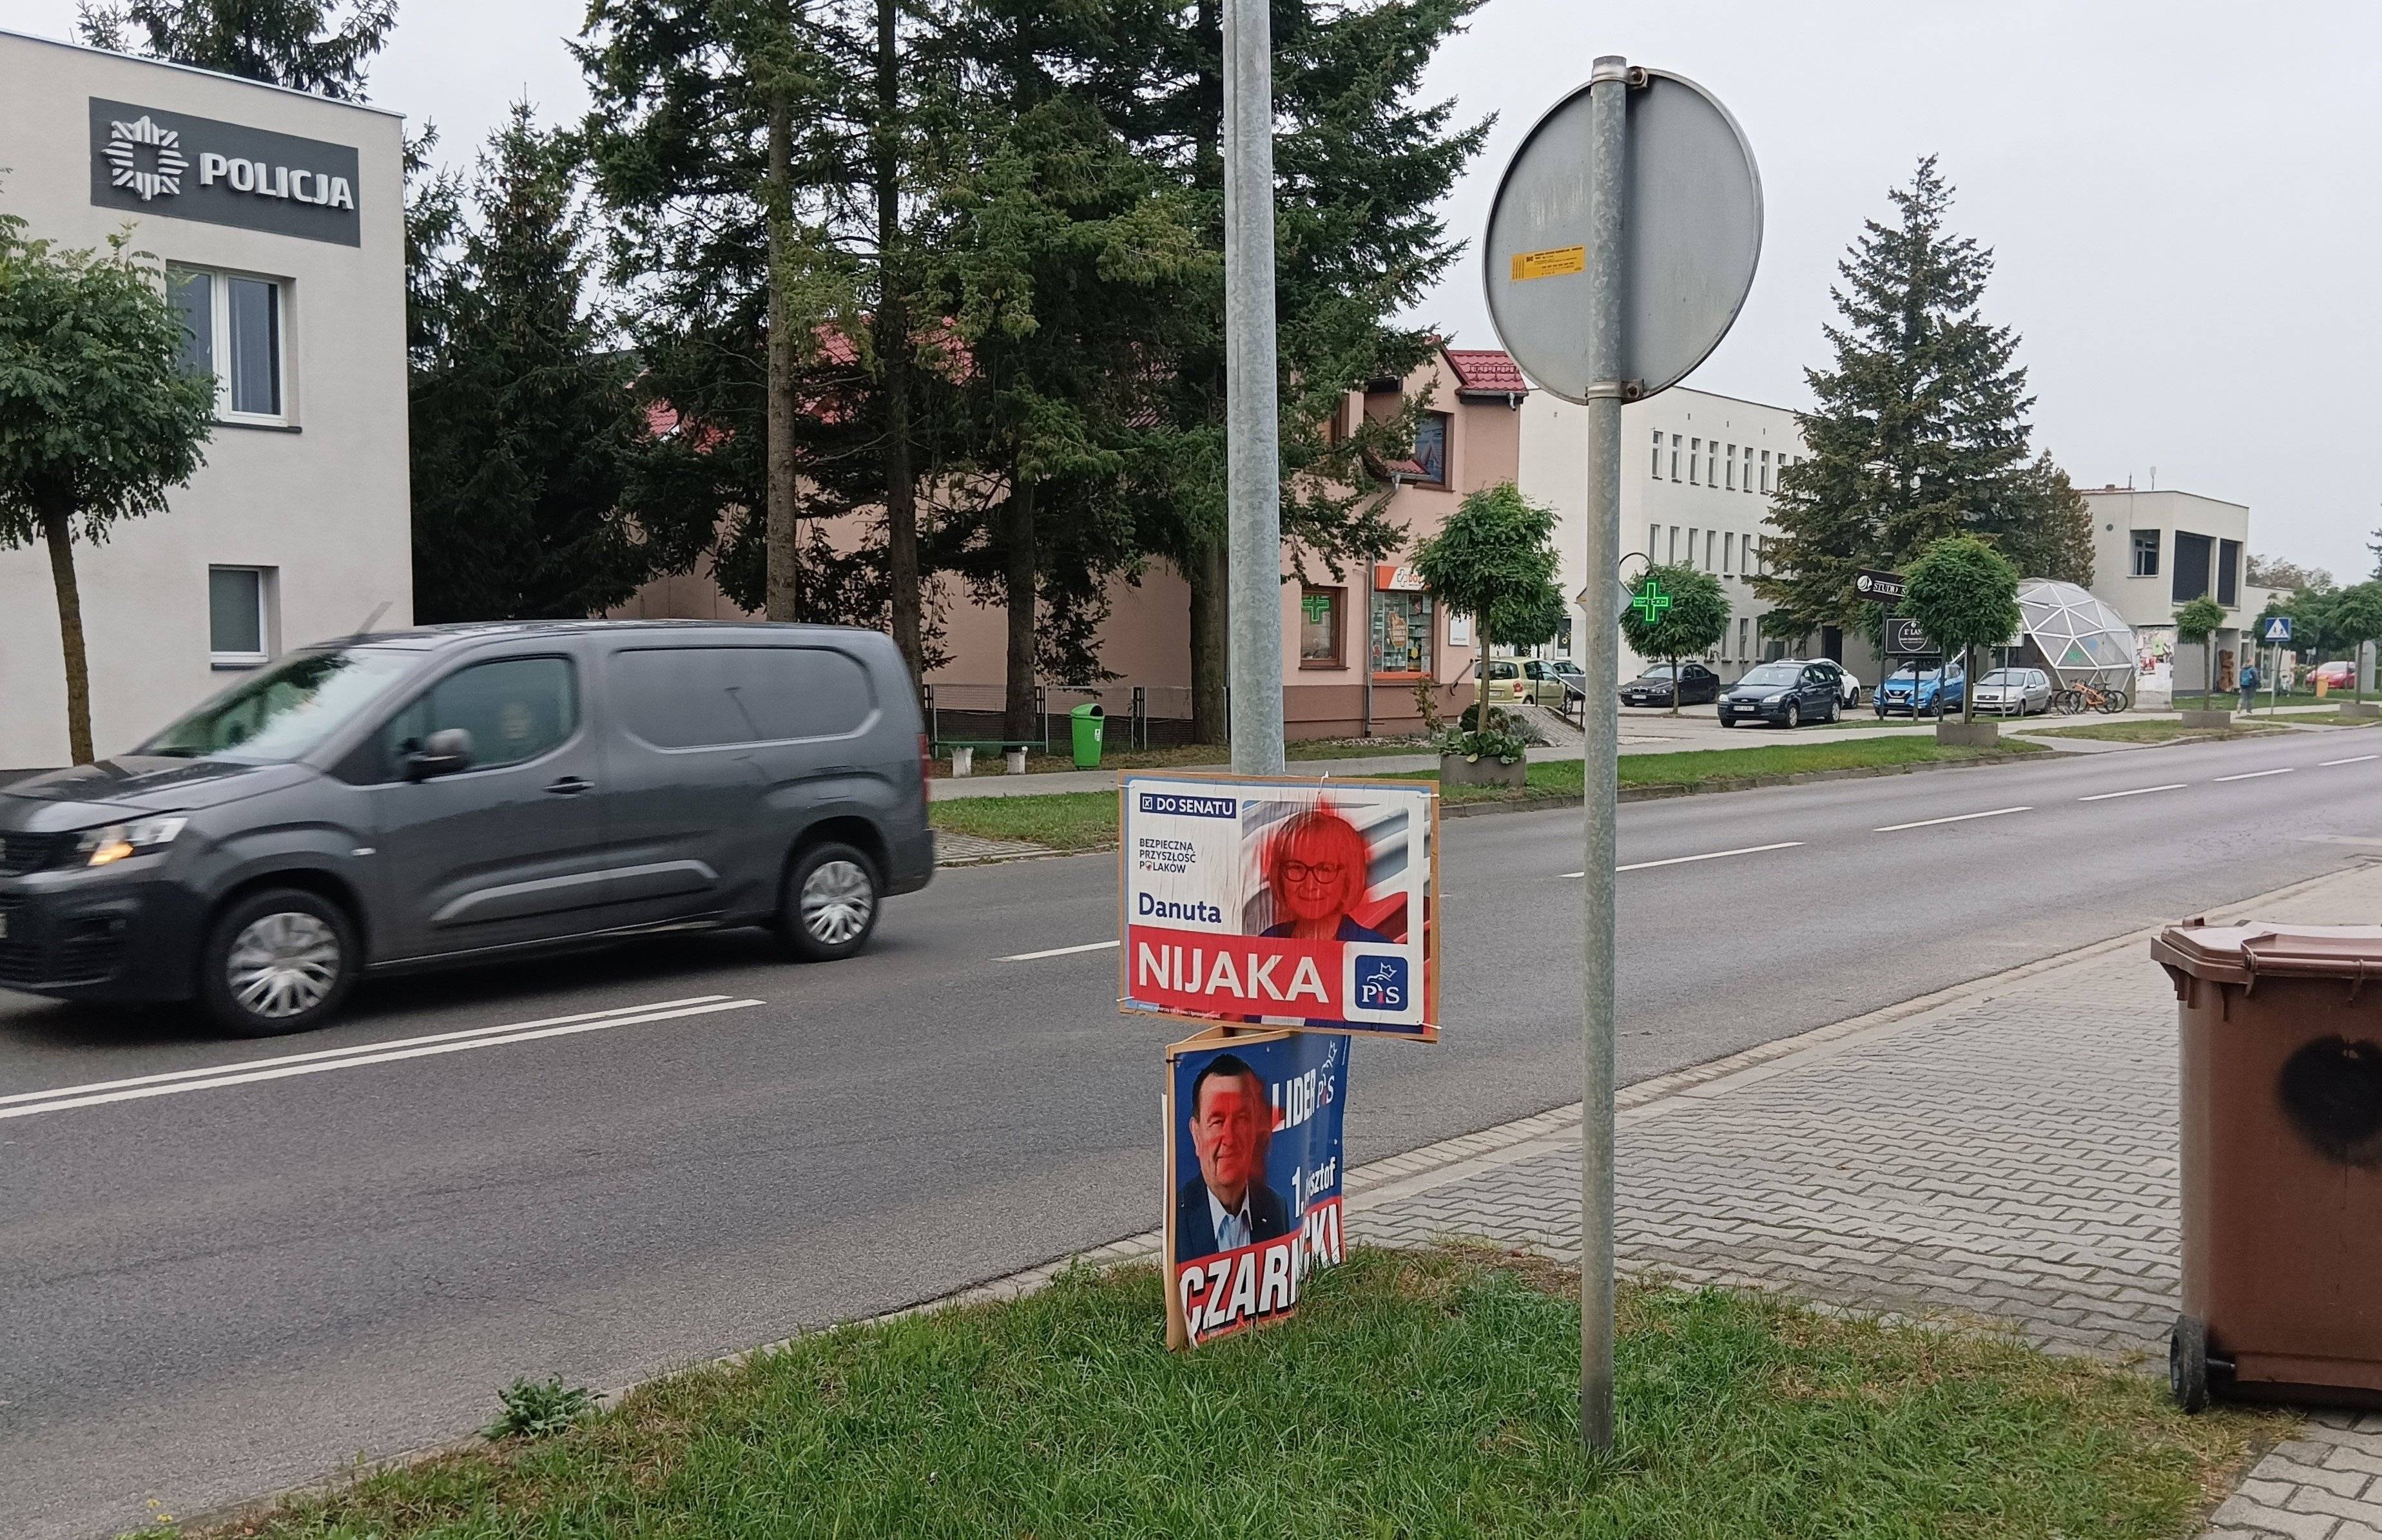 ulica Zbąszynia, widać dwa plakaty powieszone na słupie z kandydatami PiS z zamalowanymi czerwoną farbą twarzami, na dolnym plakacie widoczne nazwisko: Danuta Nijaka. Po drugiej stronie drogi posterunek policji.